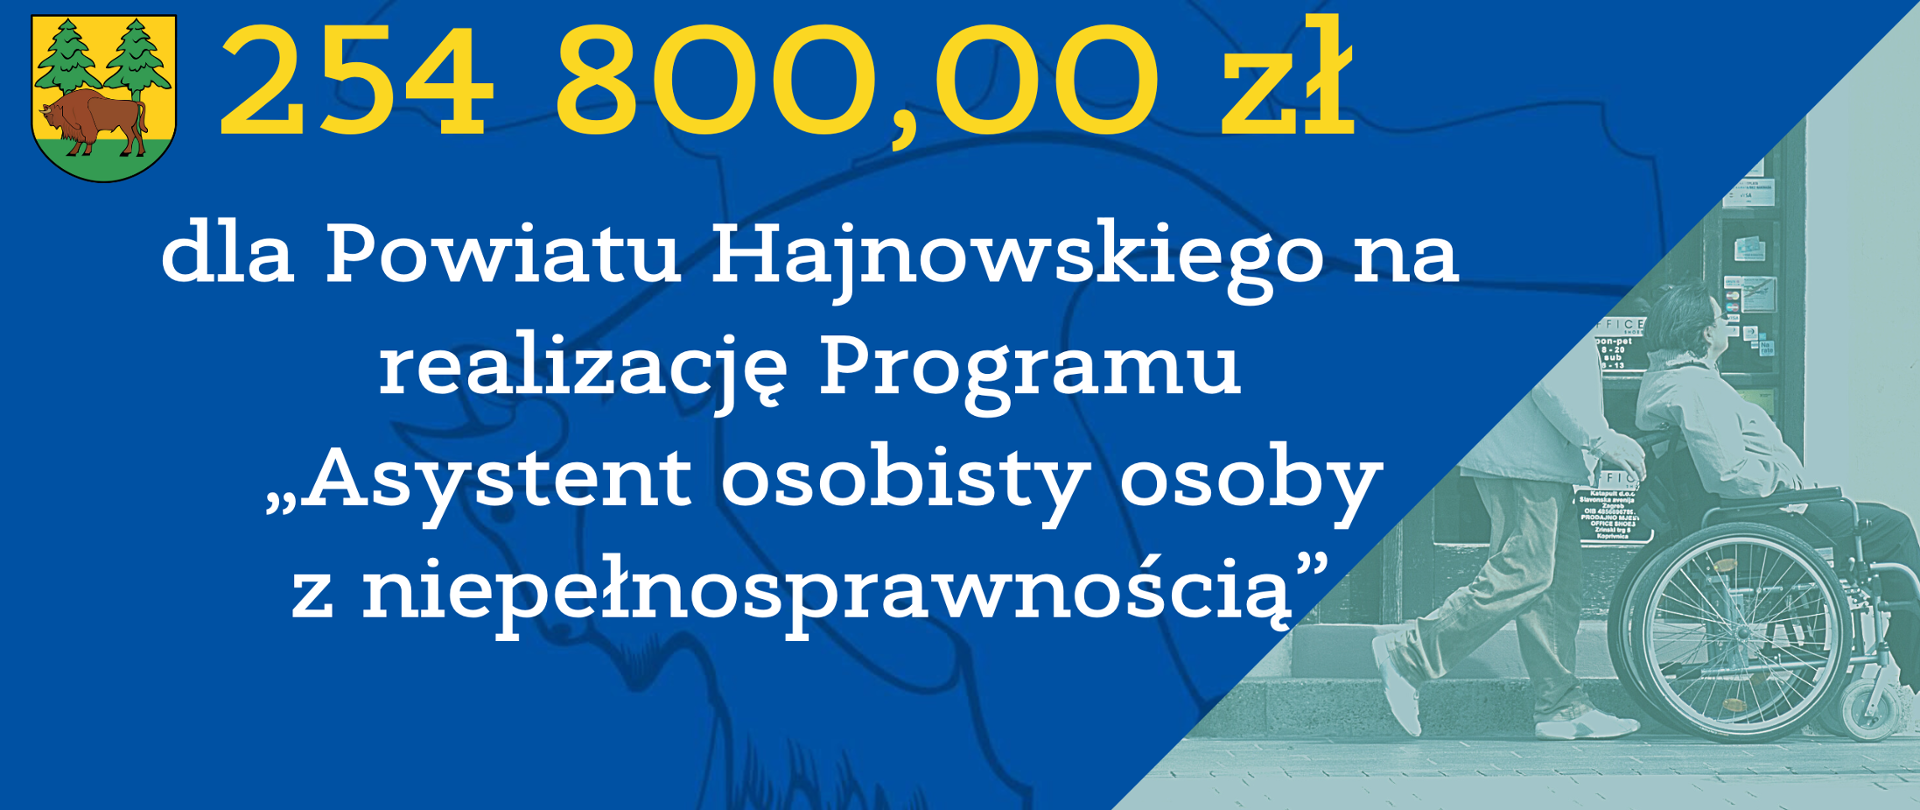 254 800,00 zł dla Powiatu Hajnowskiego na realizację Programu „Asystent osobisty osoby z niepełnosprawnością” 